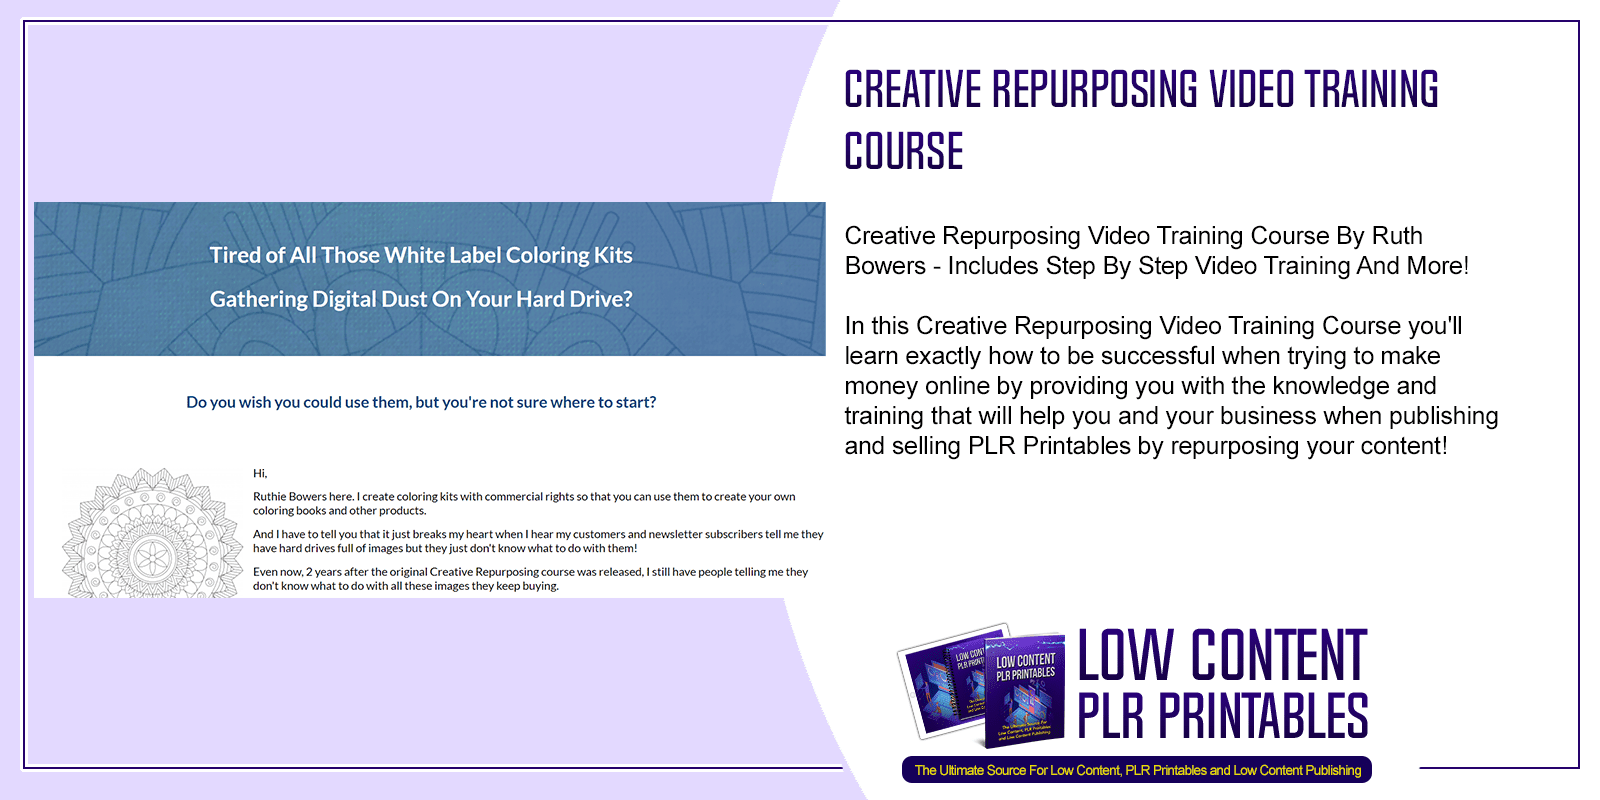 Creative Repurposing Video Training Course